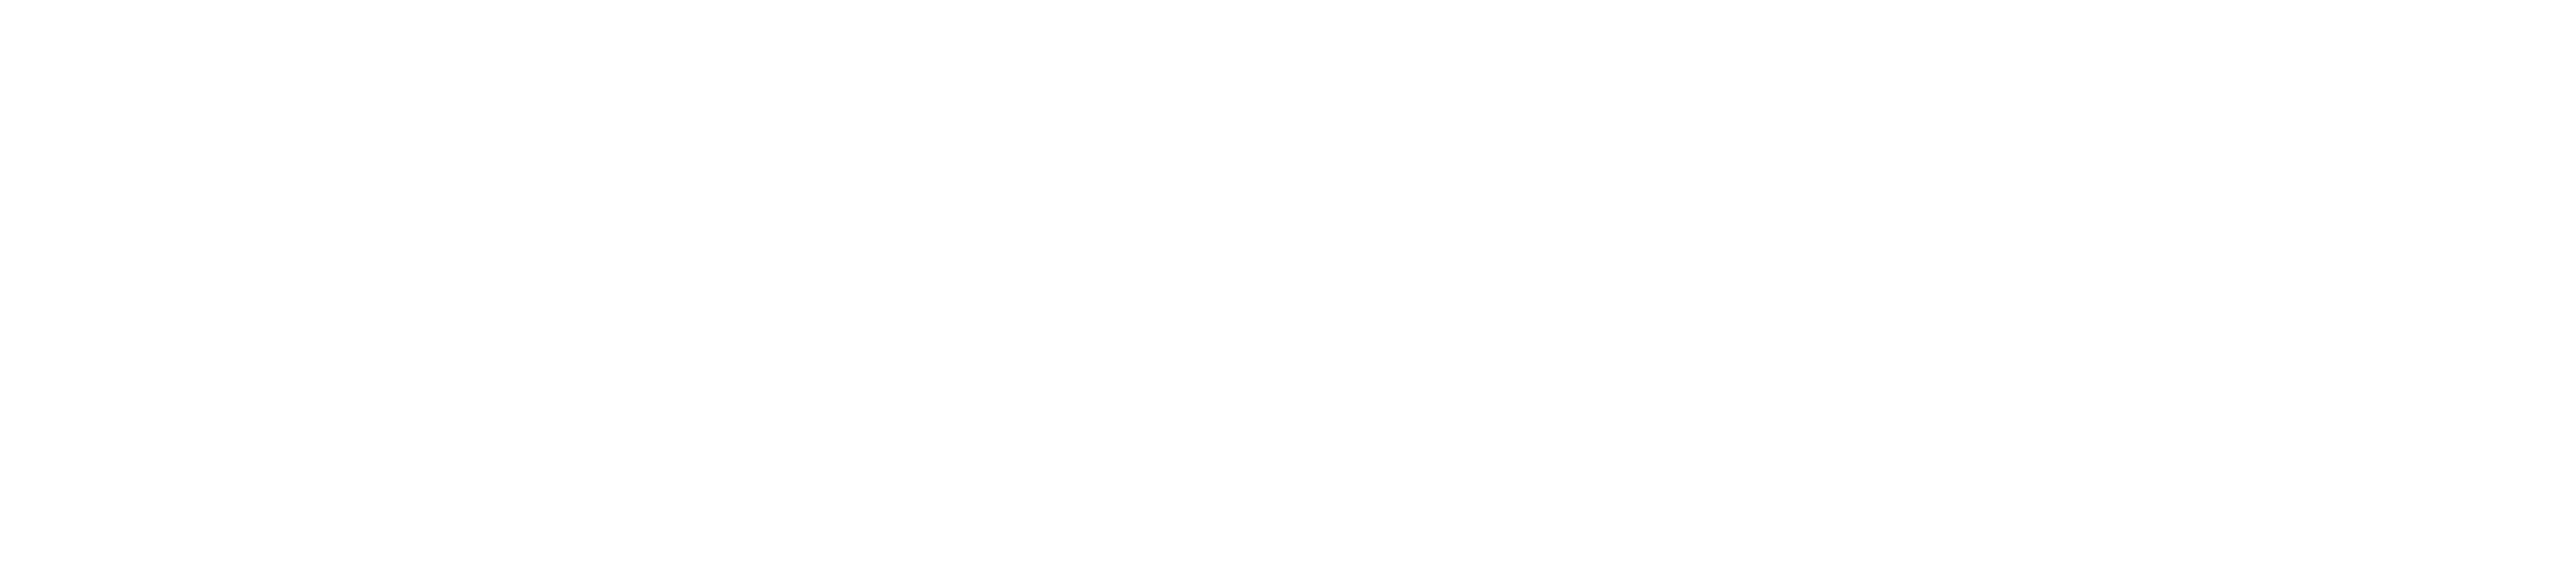 DiviWP Logo